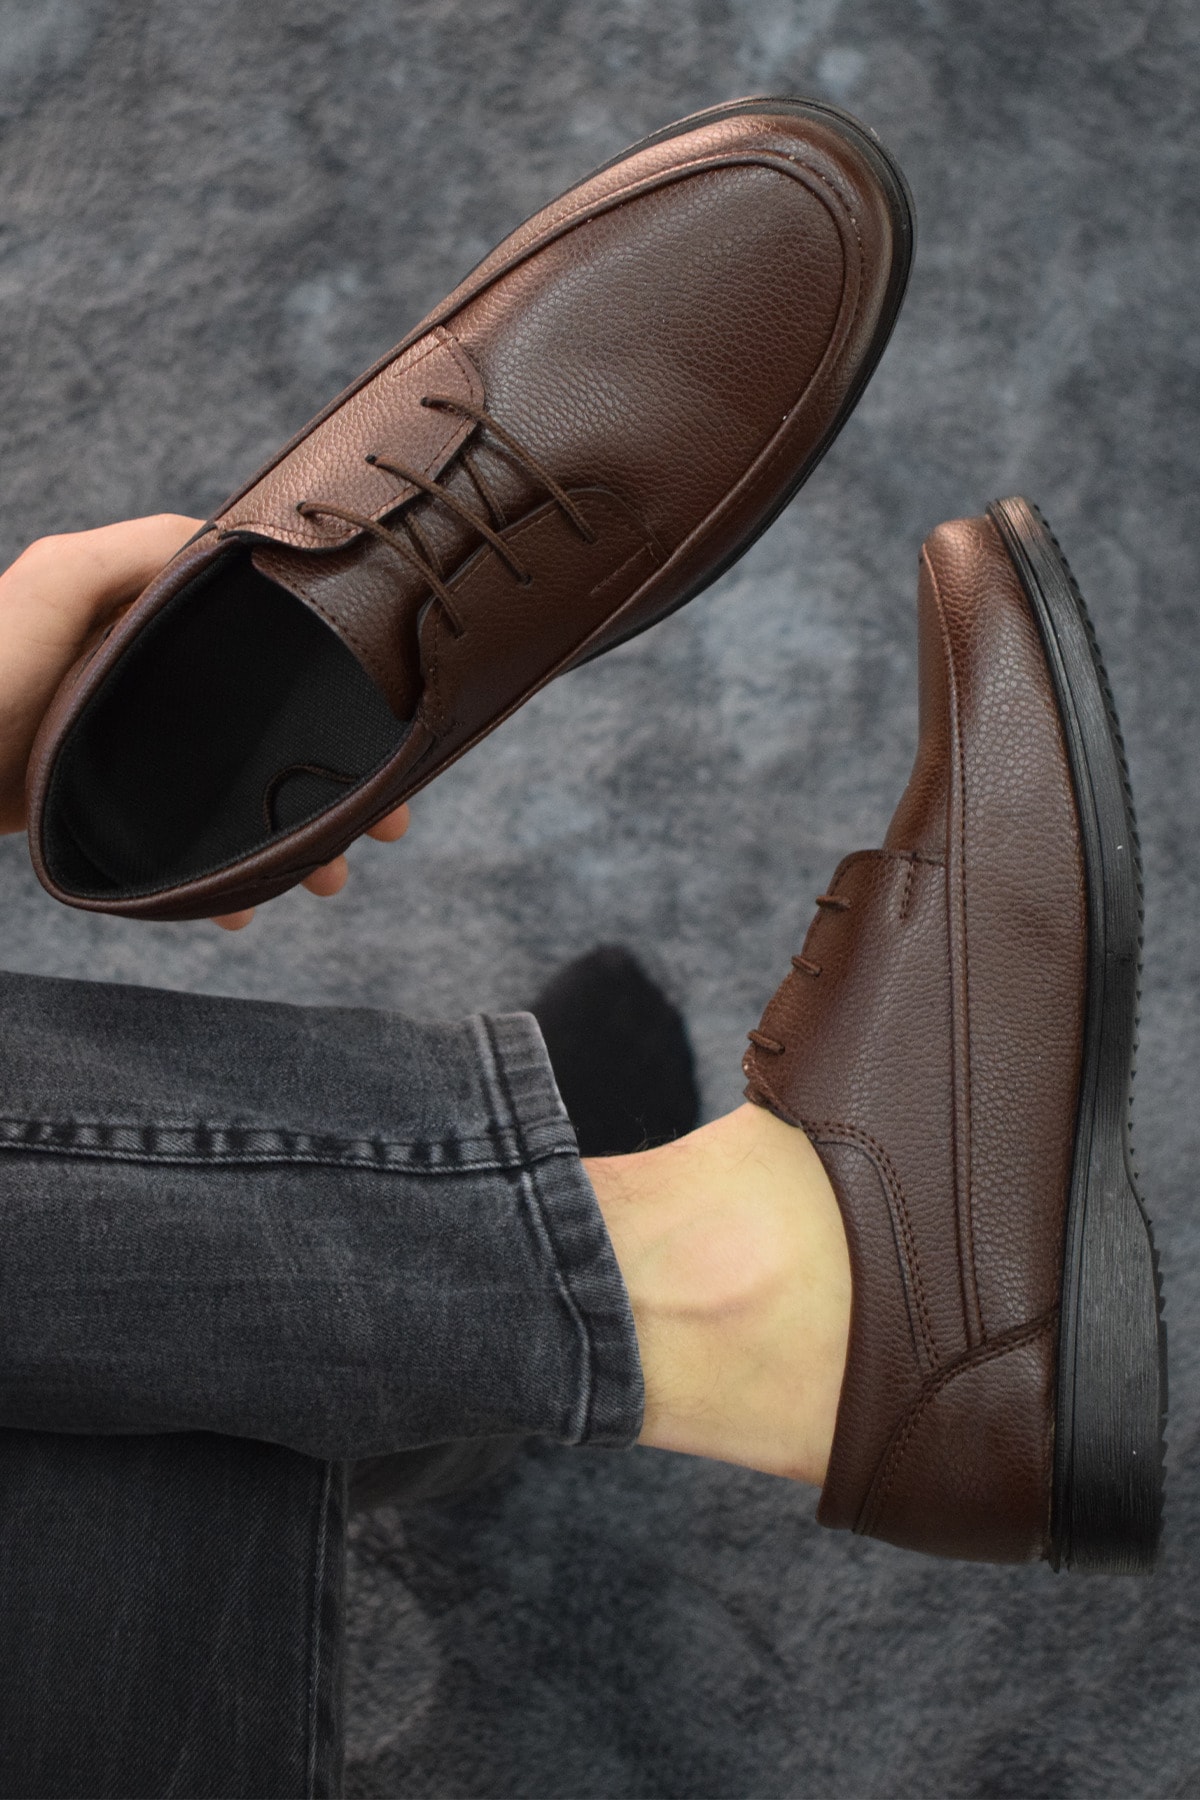 capel hor-se Erkek Kahve Bağcıklı Ayakkabı Suni Deri Baba Ayakkabısı Klasik Modern Tasarım